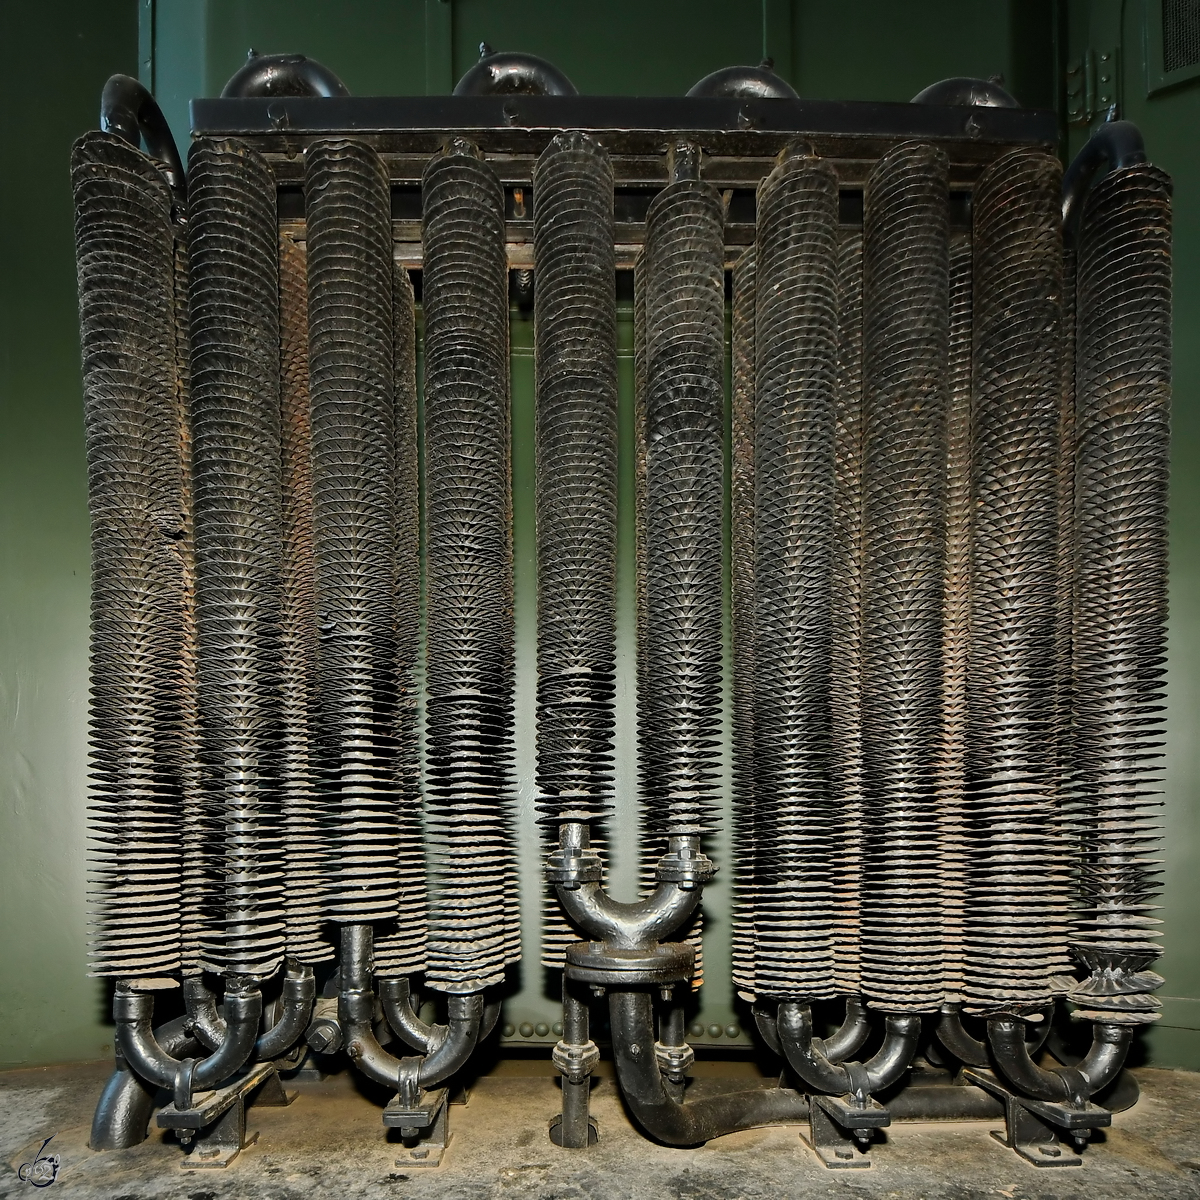 Der Außenkühler für das Transformatorenöl der Elektrolokomotive E71 19, so gesehen Anfang September 2021 im DB-Museum Koblenz.